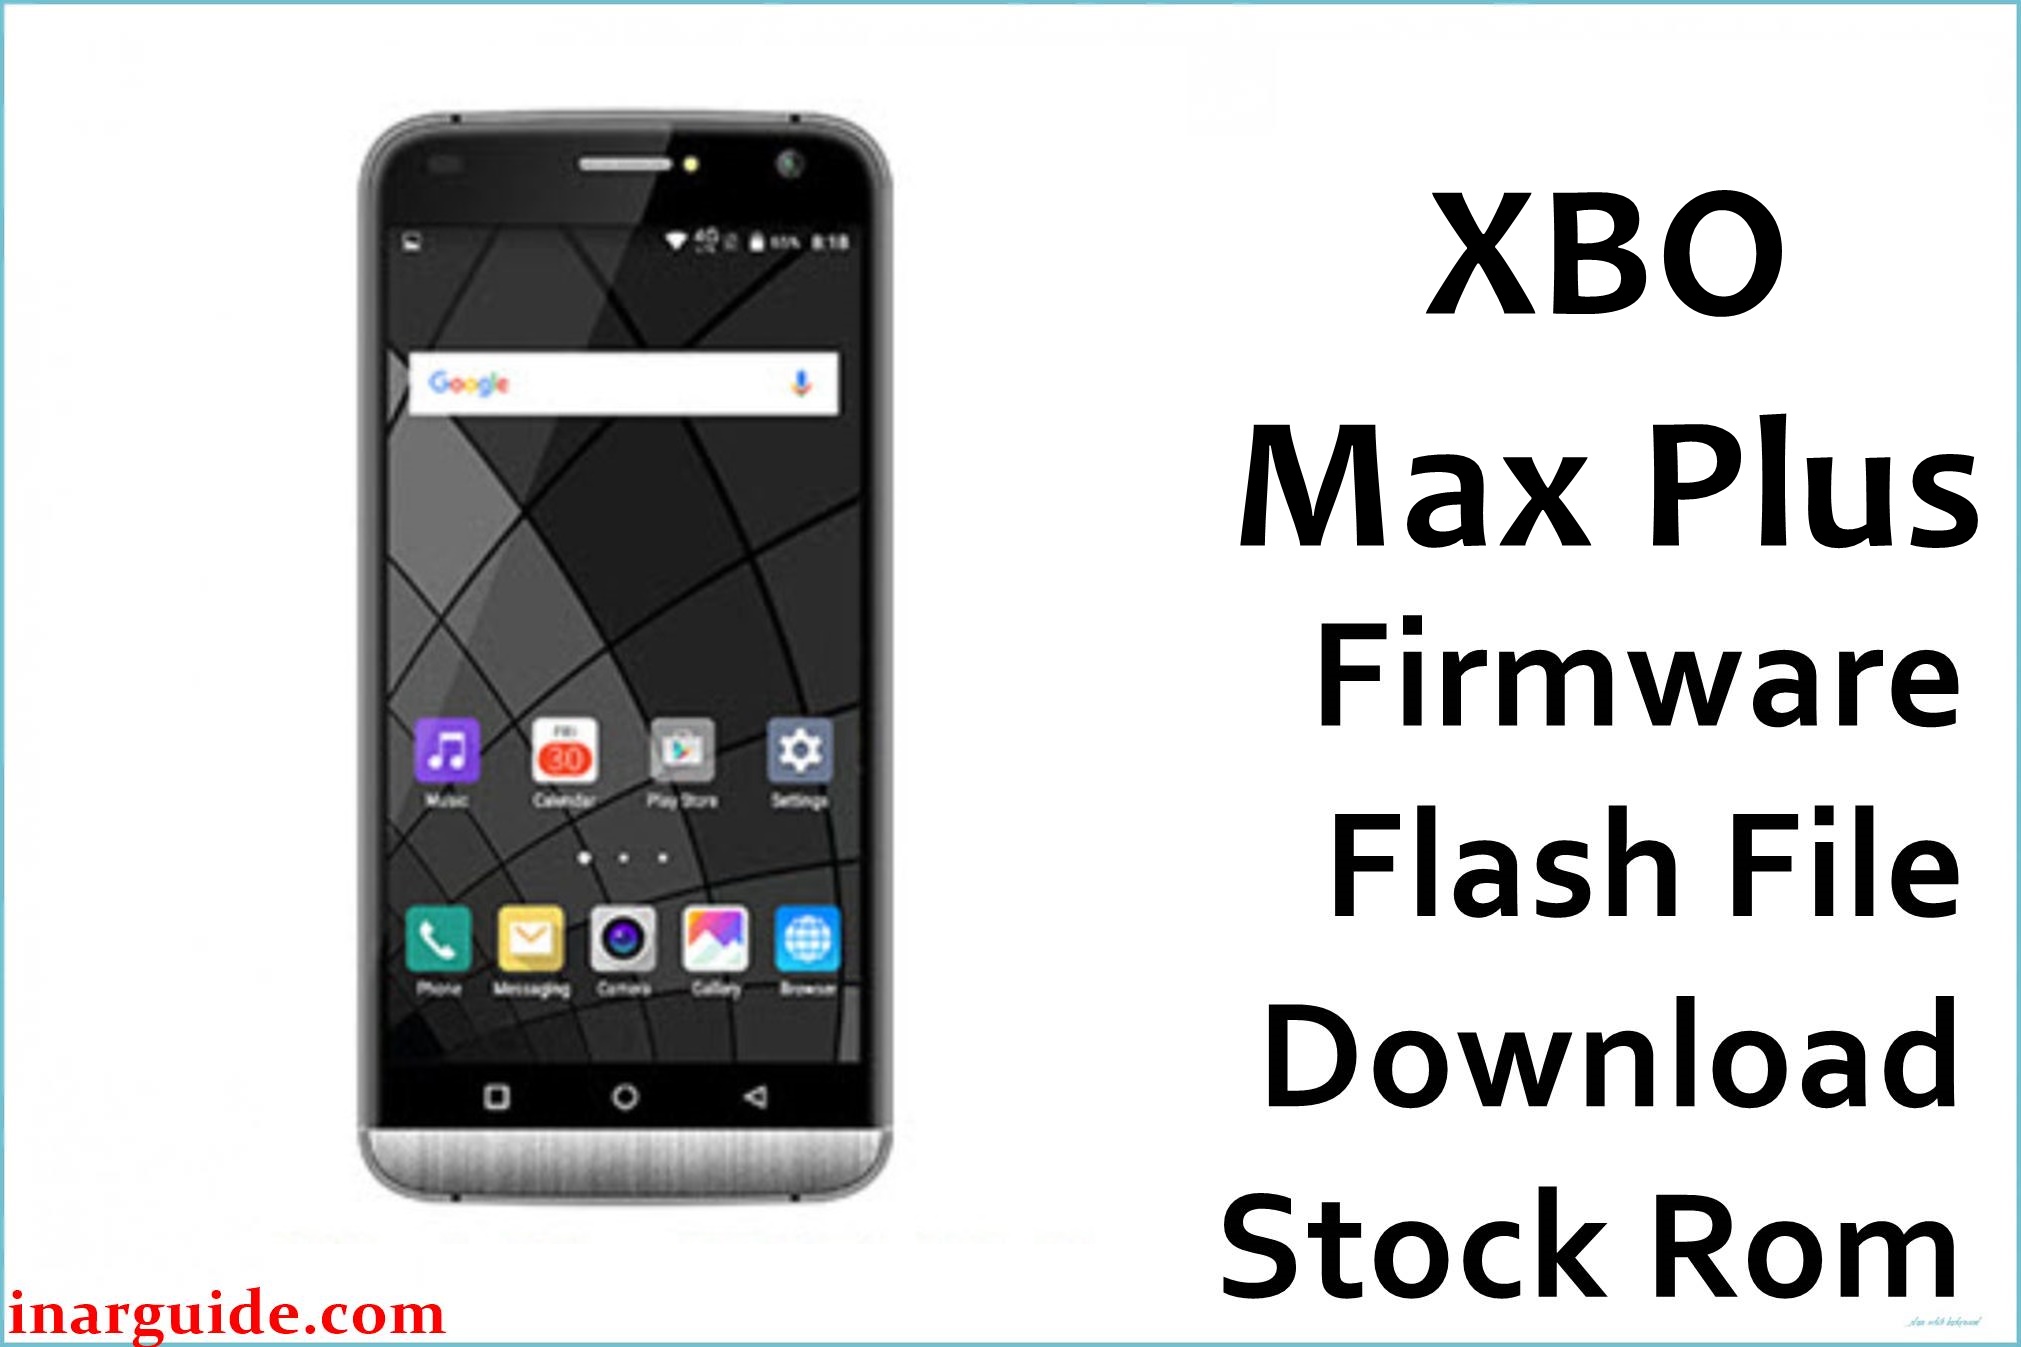 XBO Max Plus